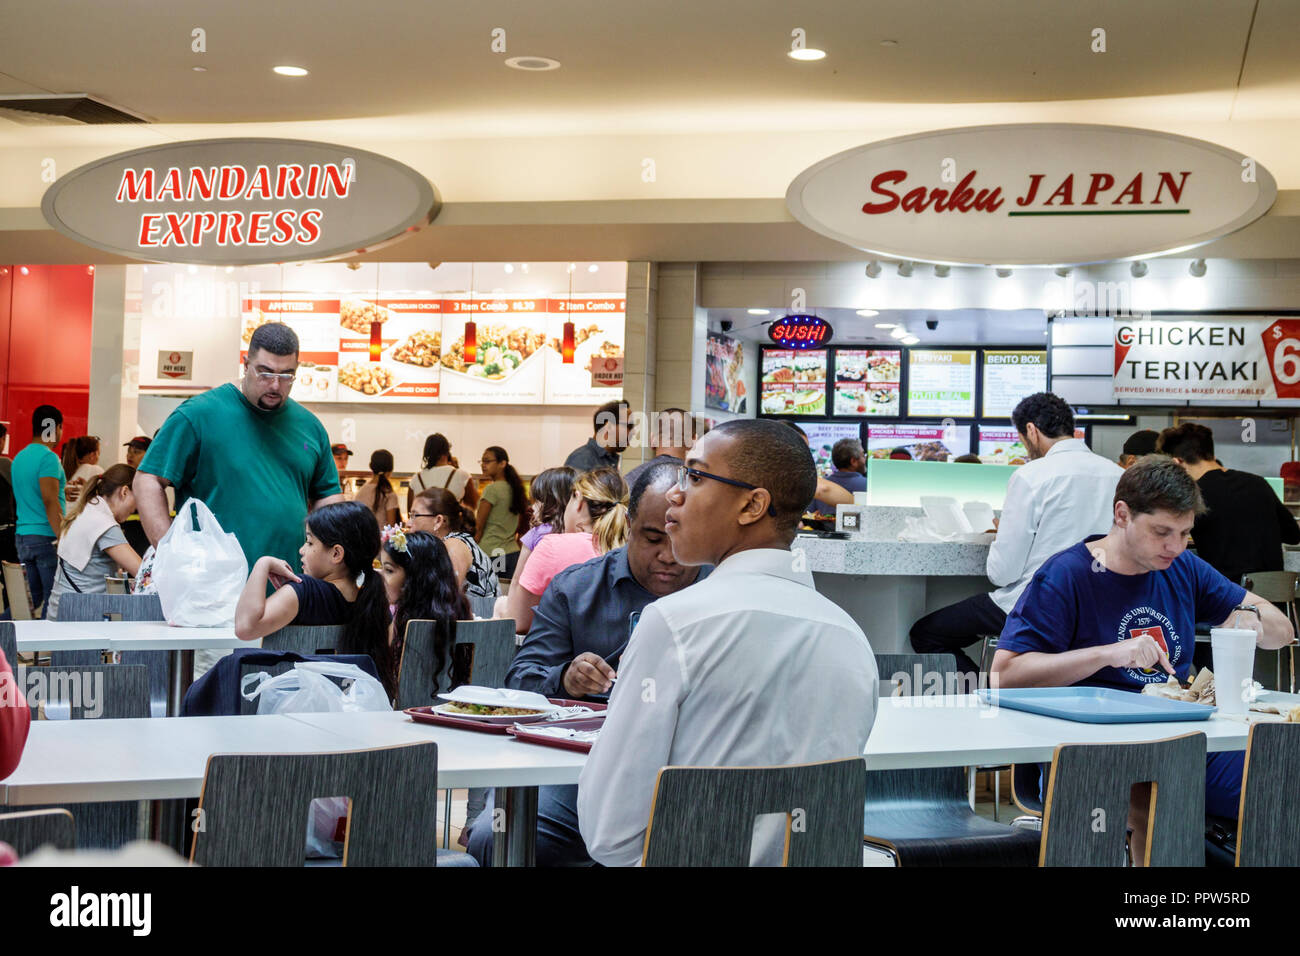 Dadeland Mall. Miami. Florida. USA Stock Photo - Alamy